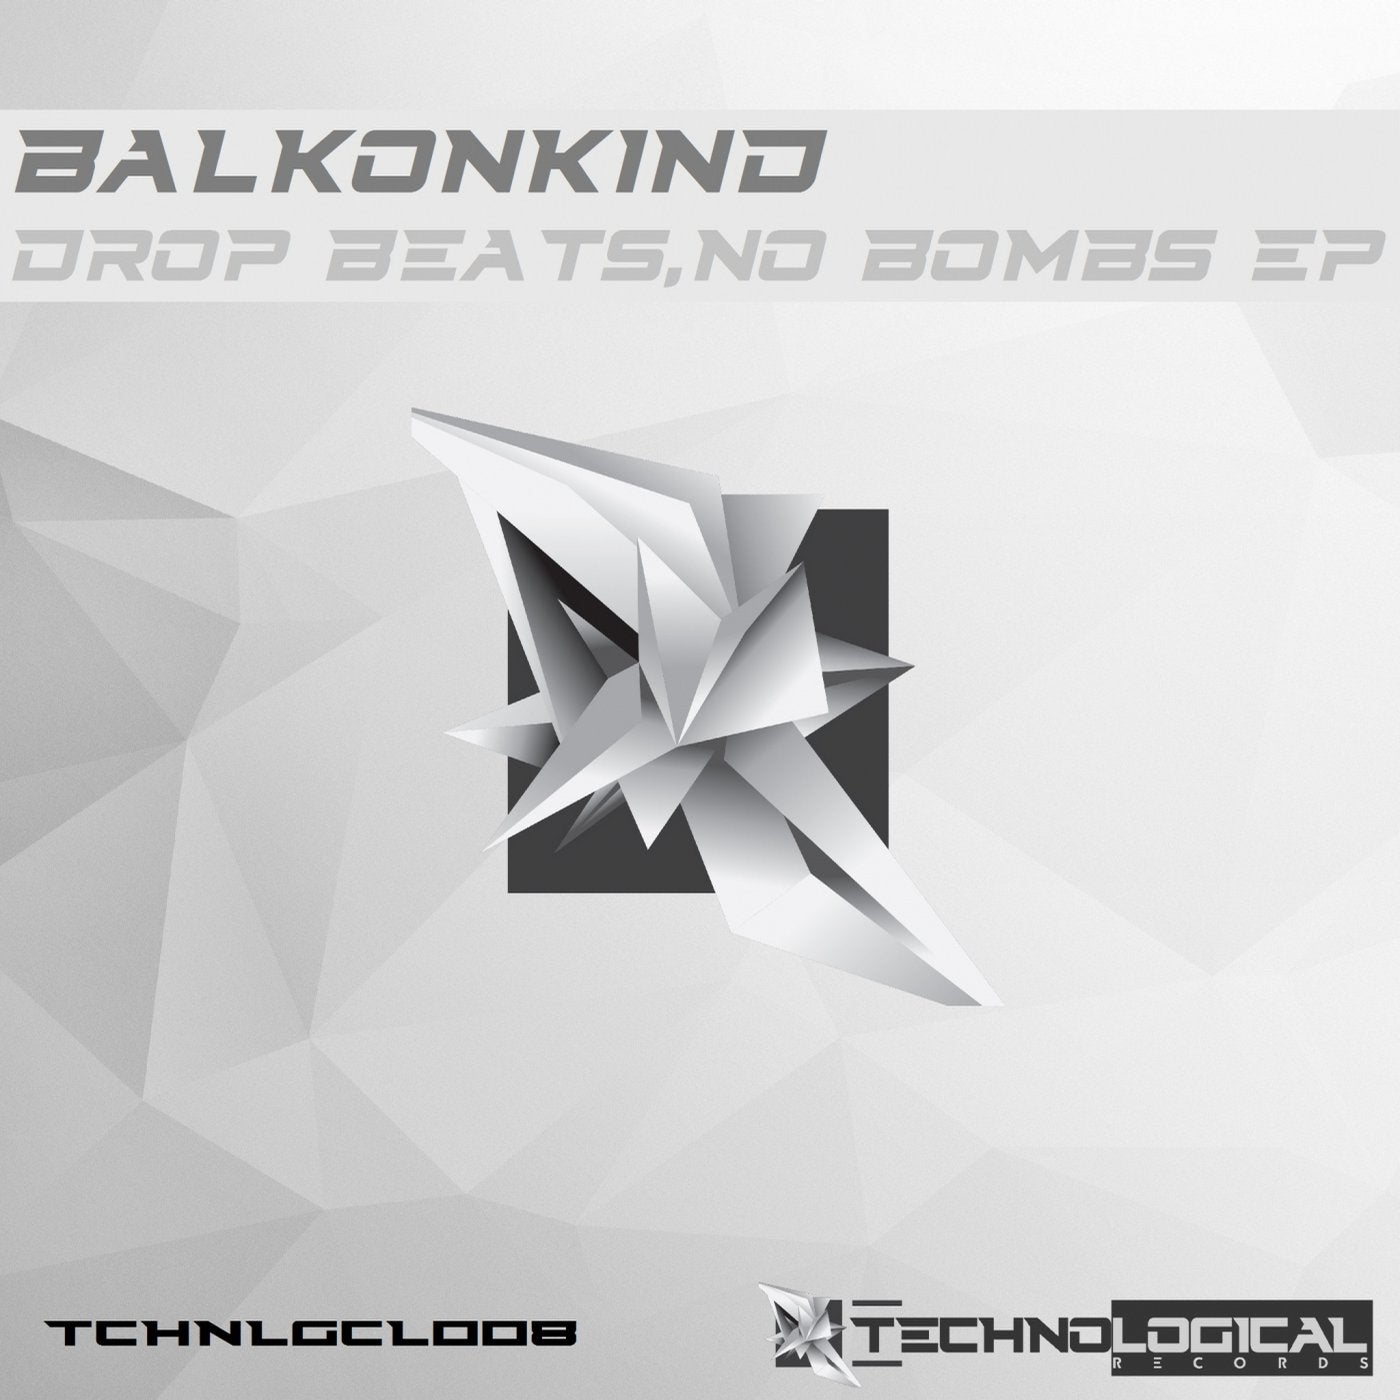 Drop Beats,No Bombs EP